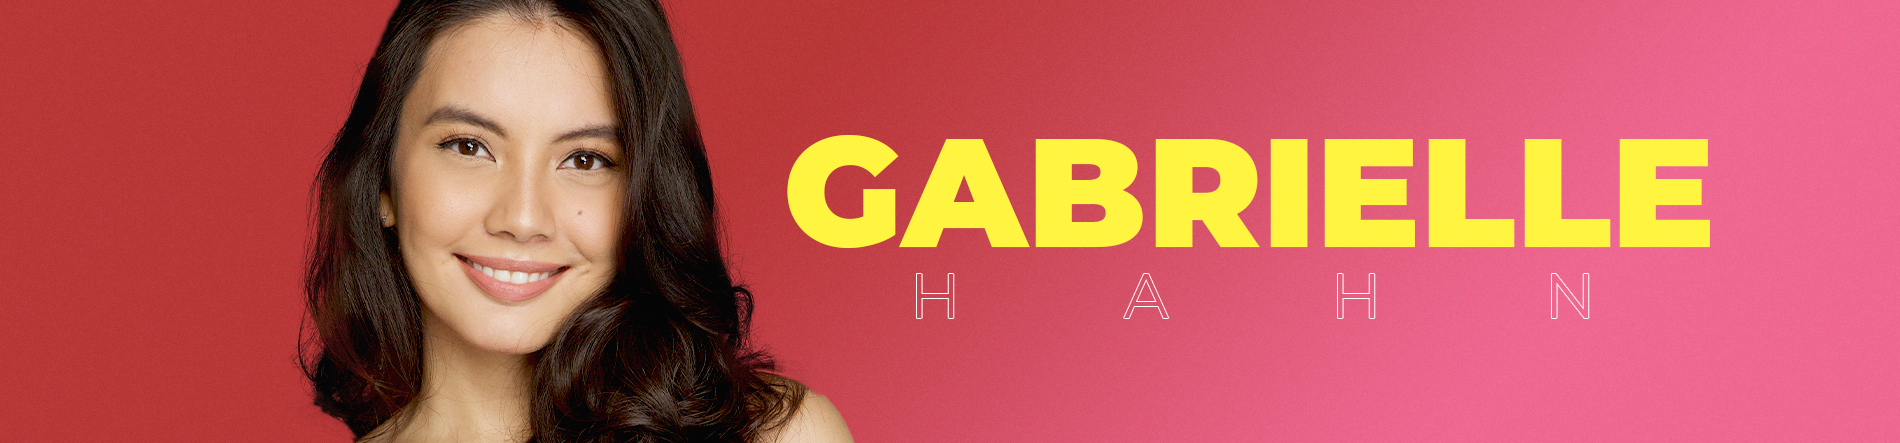 Gabrielle Hahn Desktop Banner